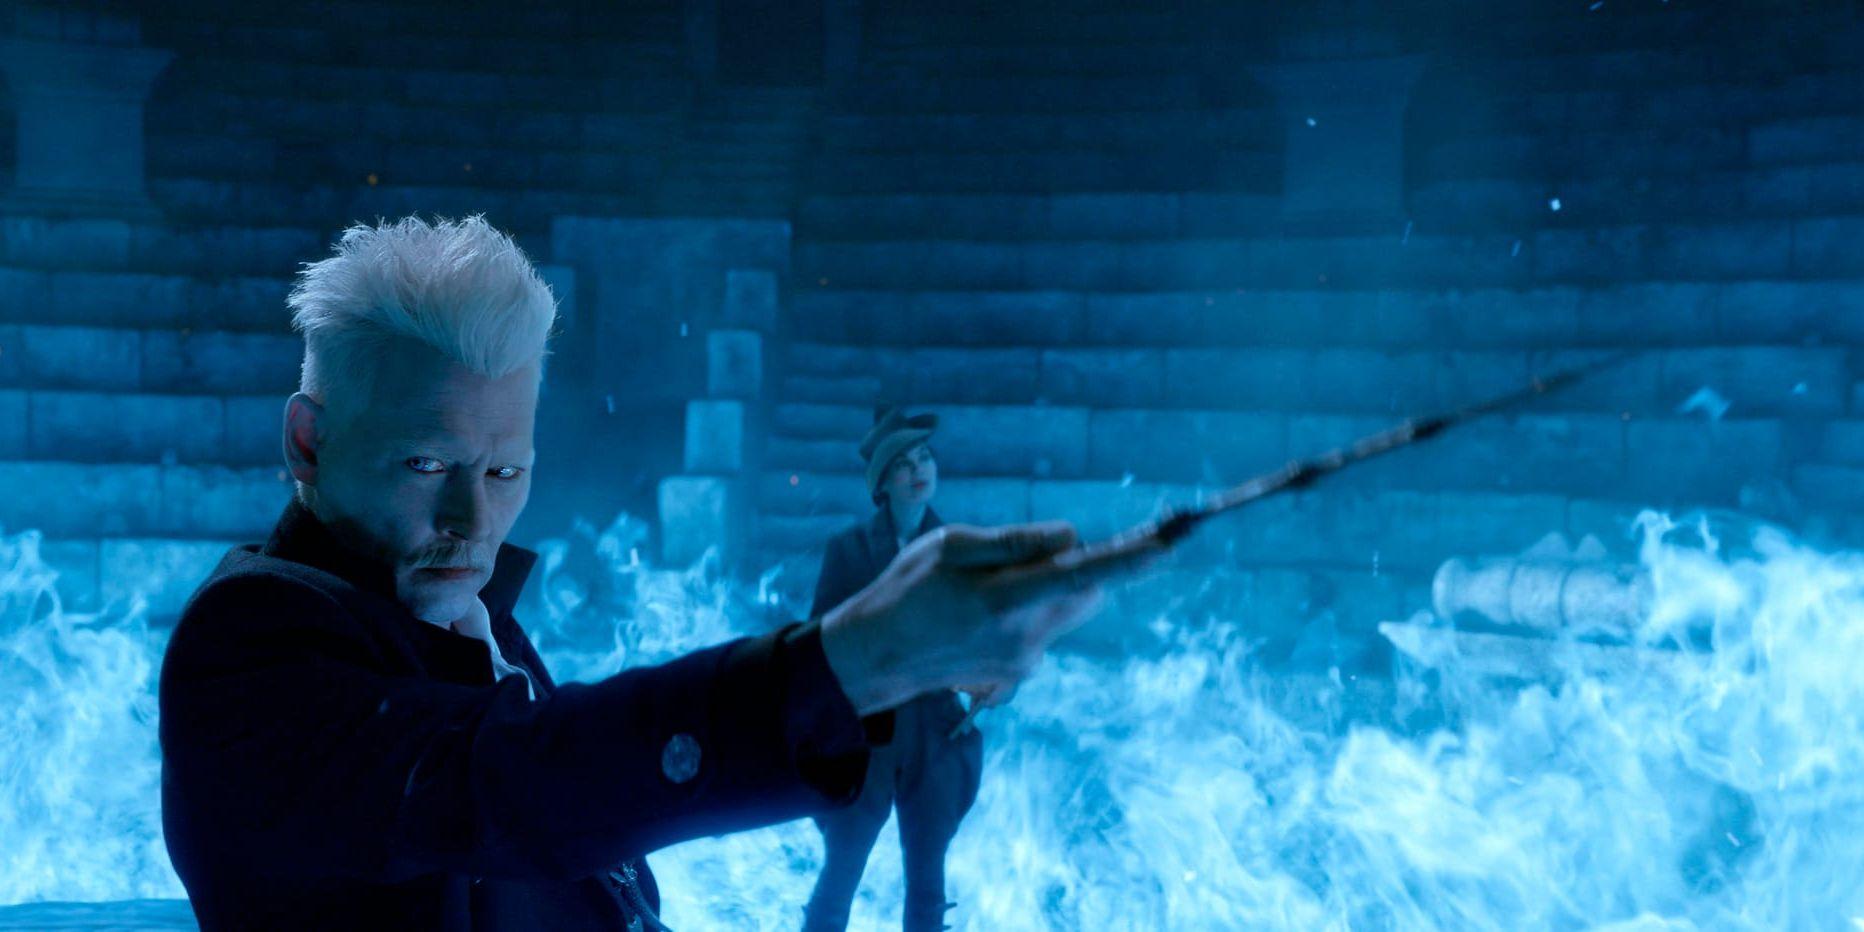 Nya filmen i "Harry Potter"-universumet "Fantastiska vidunder: Grindelwalds brott" har Johnny Depp i rollen som den onde trollkarlen Grindelwald. Presbild.